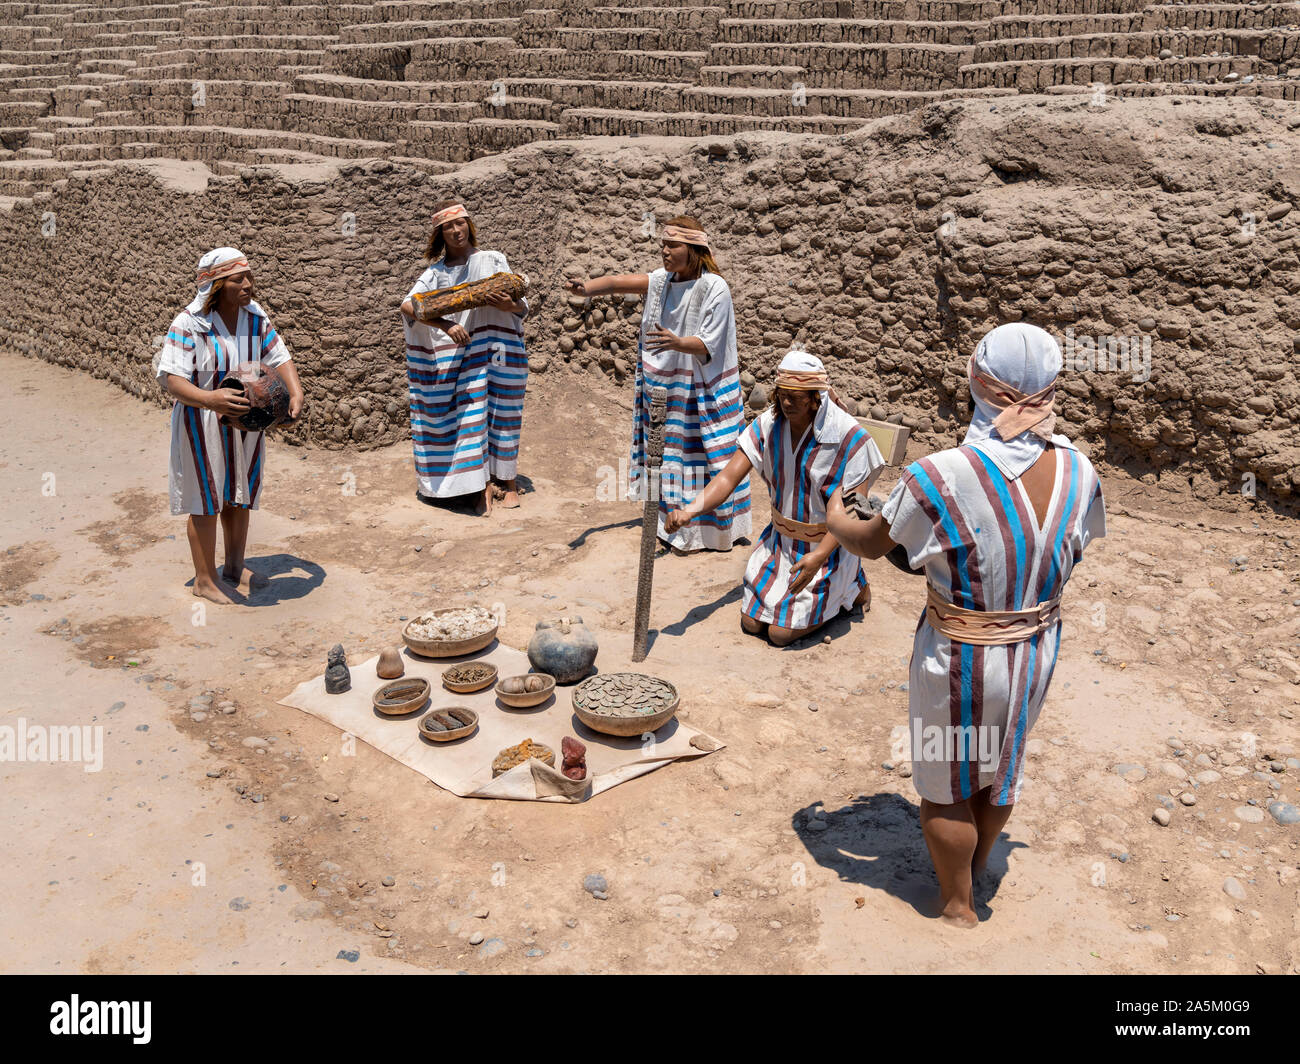 Tableau mostrante un Ychsma rituali di sepoltura nelle rovine di Huaca Pucllana, una piramide di adobe che risale circa al 400 D.C. Miraflores Lima, Perù, Sud Amer Foto Stock